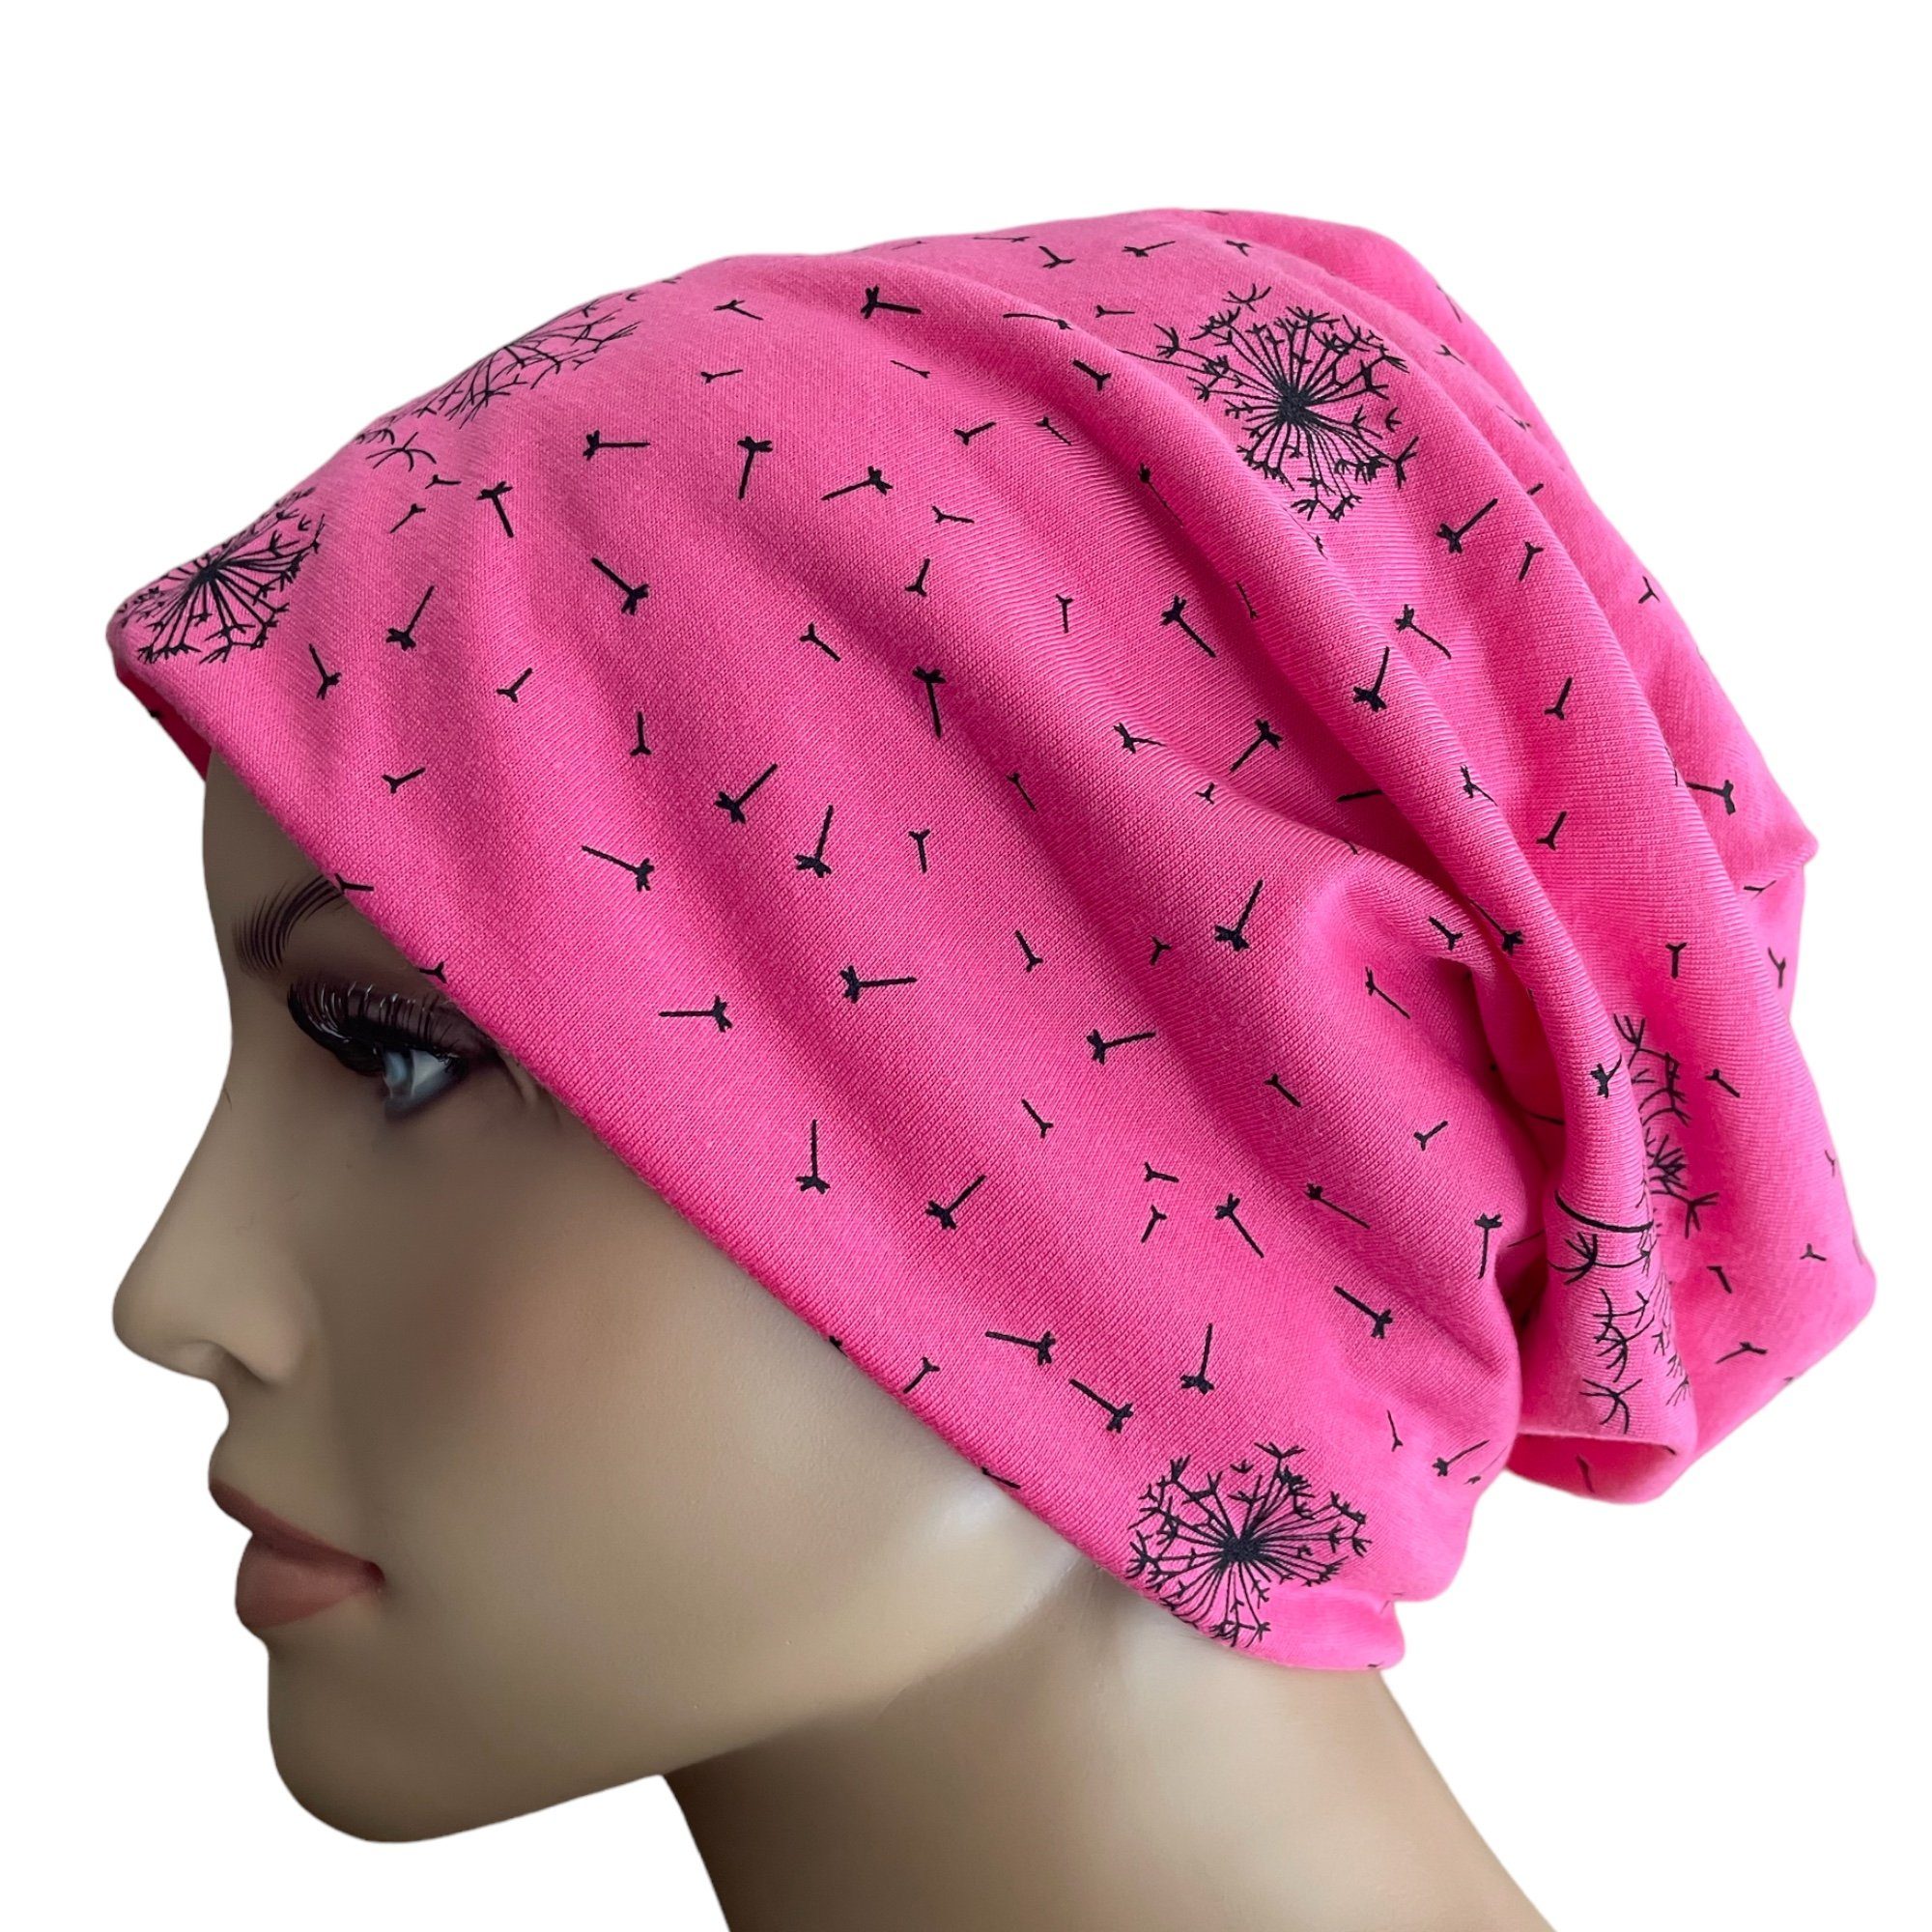 Taschen4life Beanie Slouch Longbeanie Mütze leichte Damen Beanie, Motiv Pusteblume, Sommermütze pink | Sommermützen